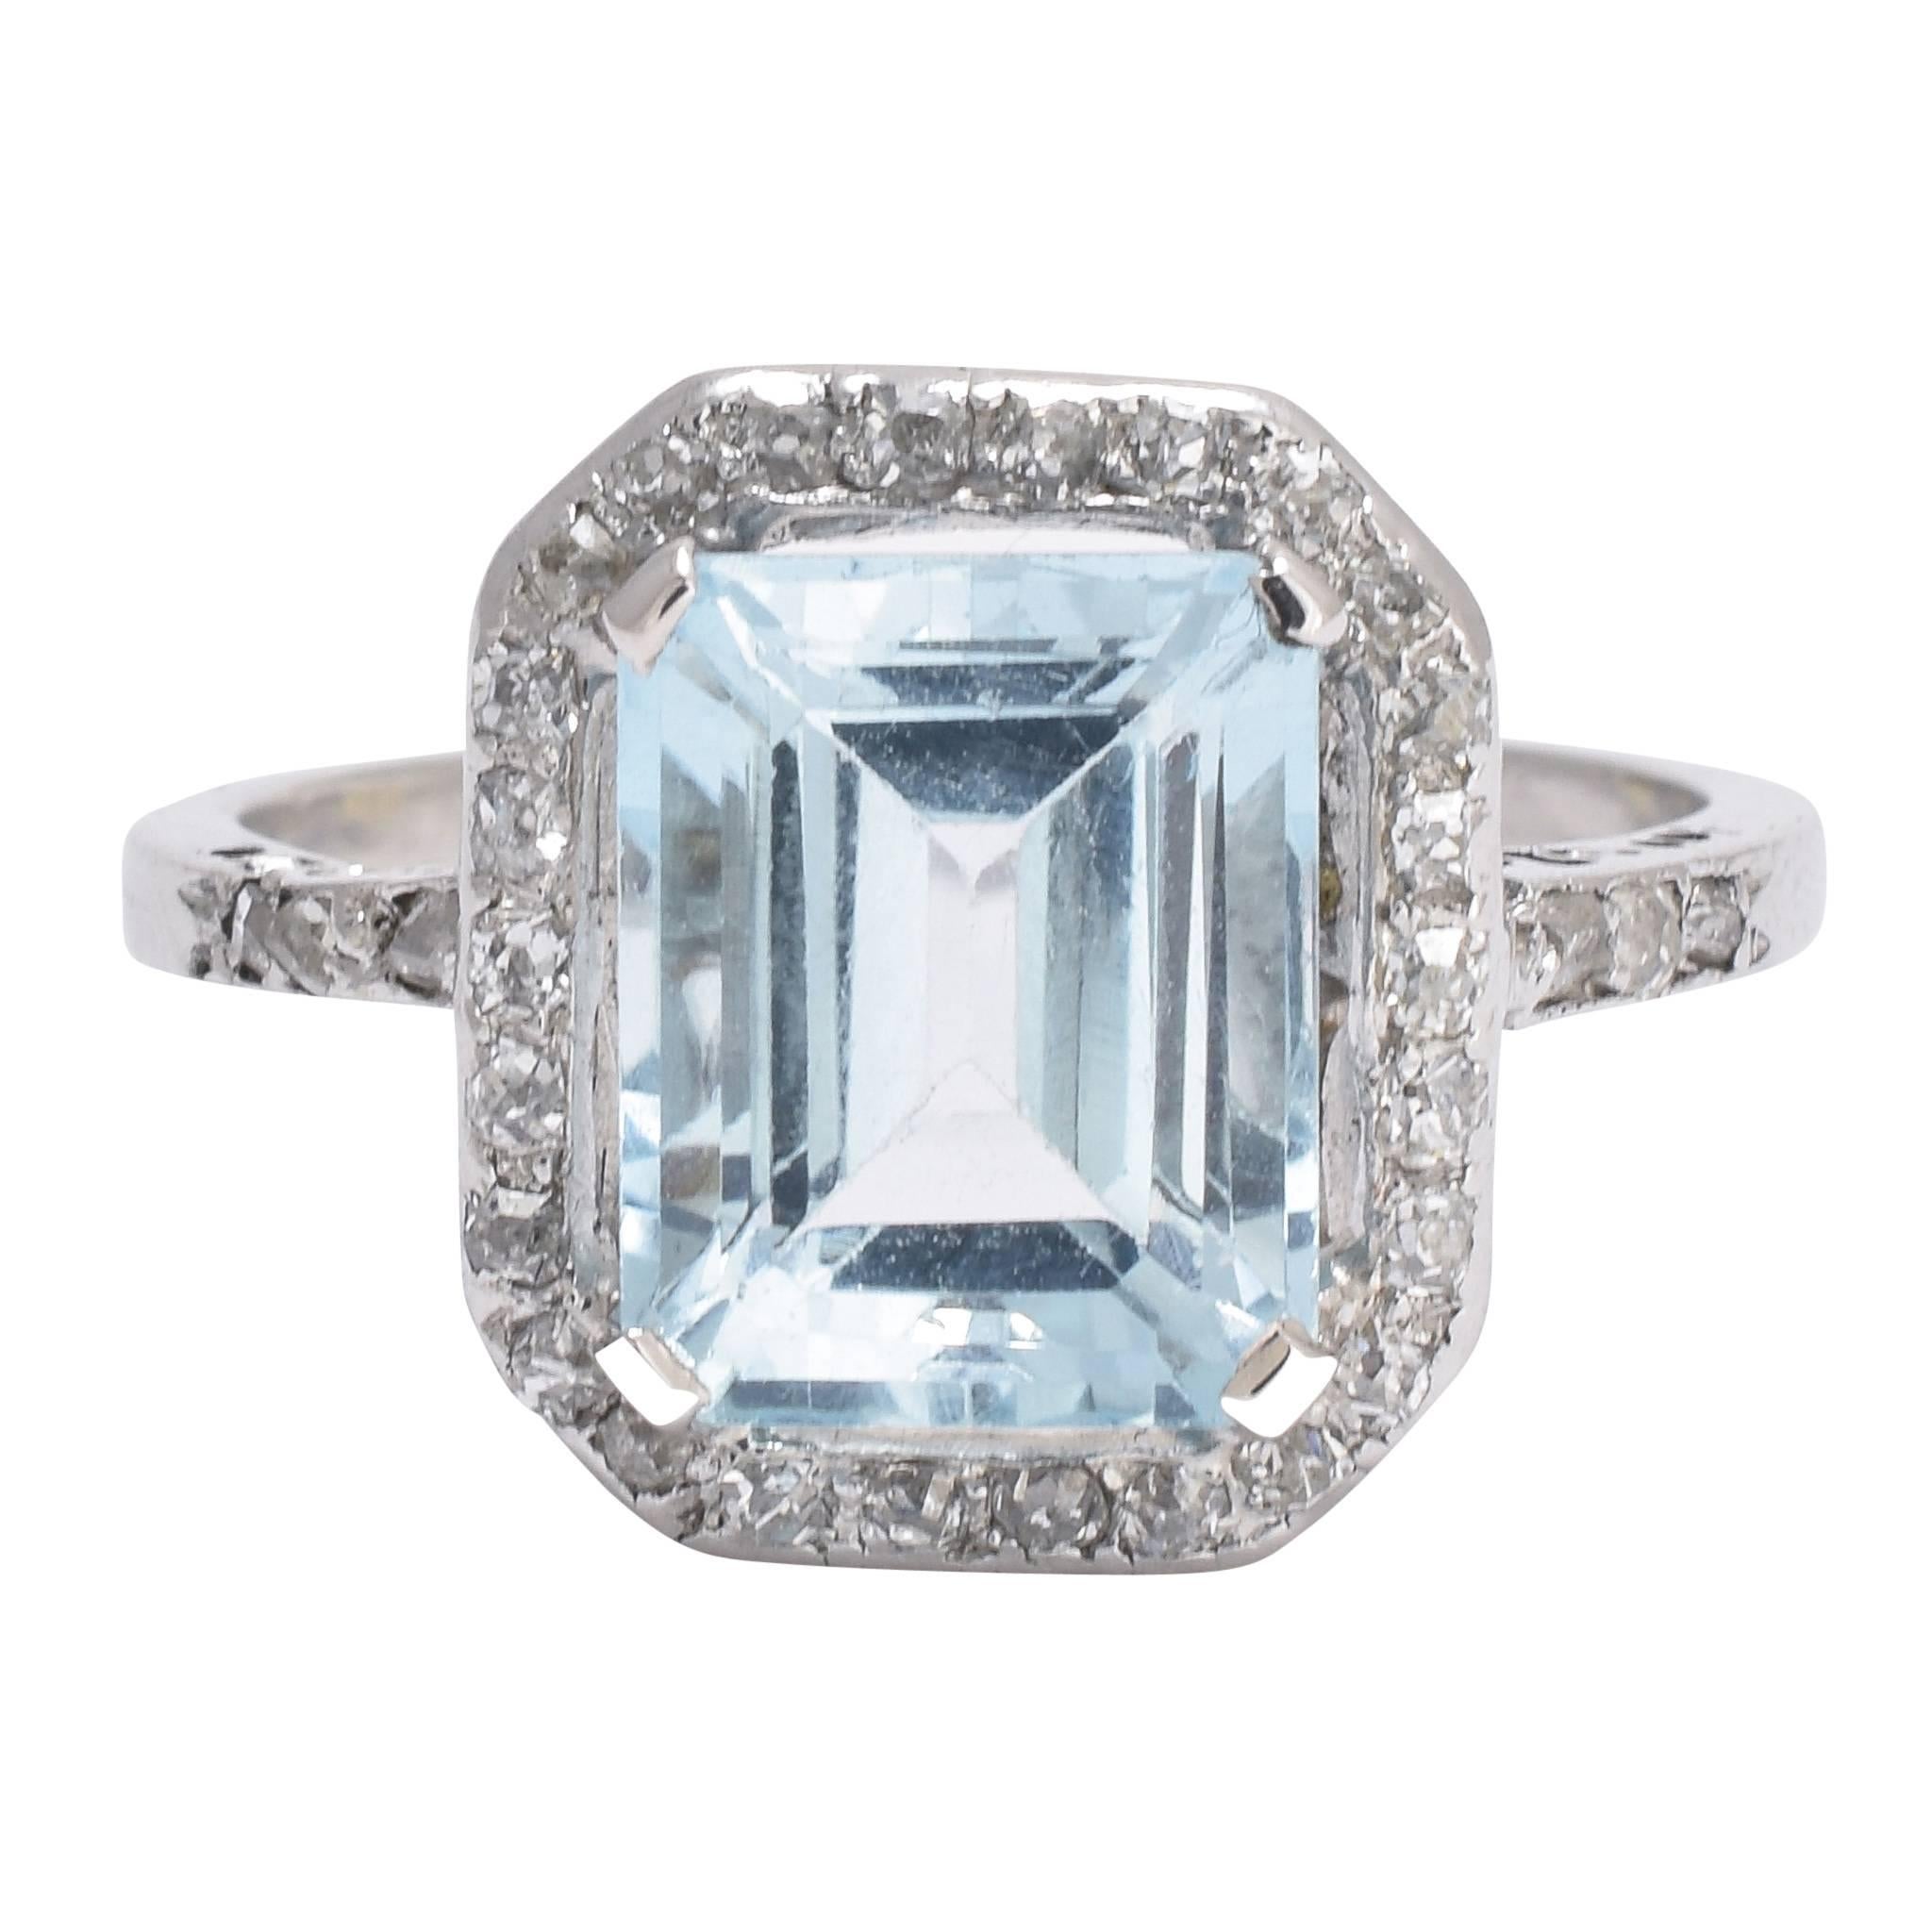 Antique Edwardian 4 Carat Aquamarine Diamond Platinum Engagement Ring